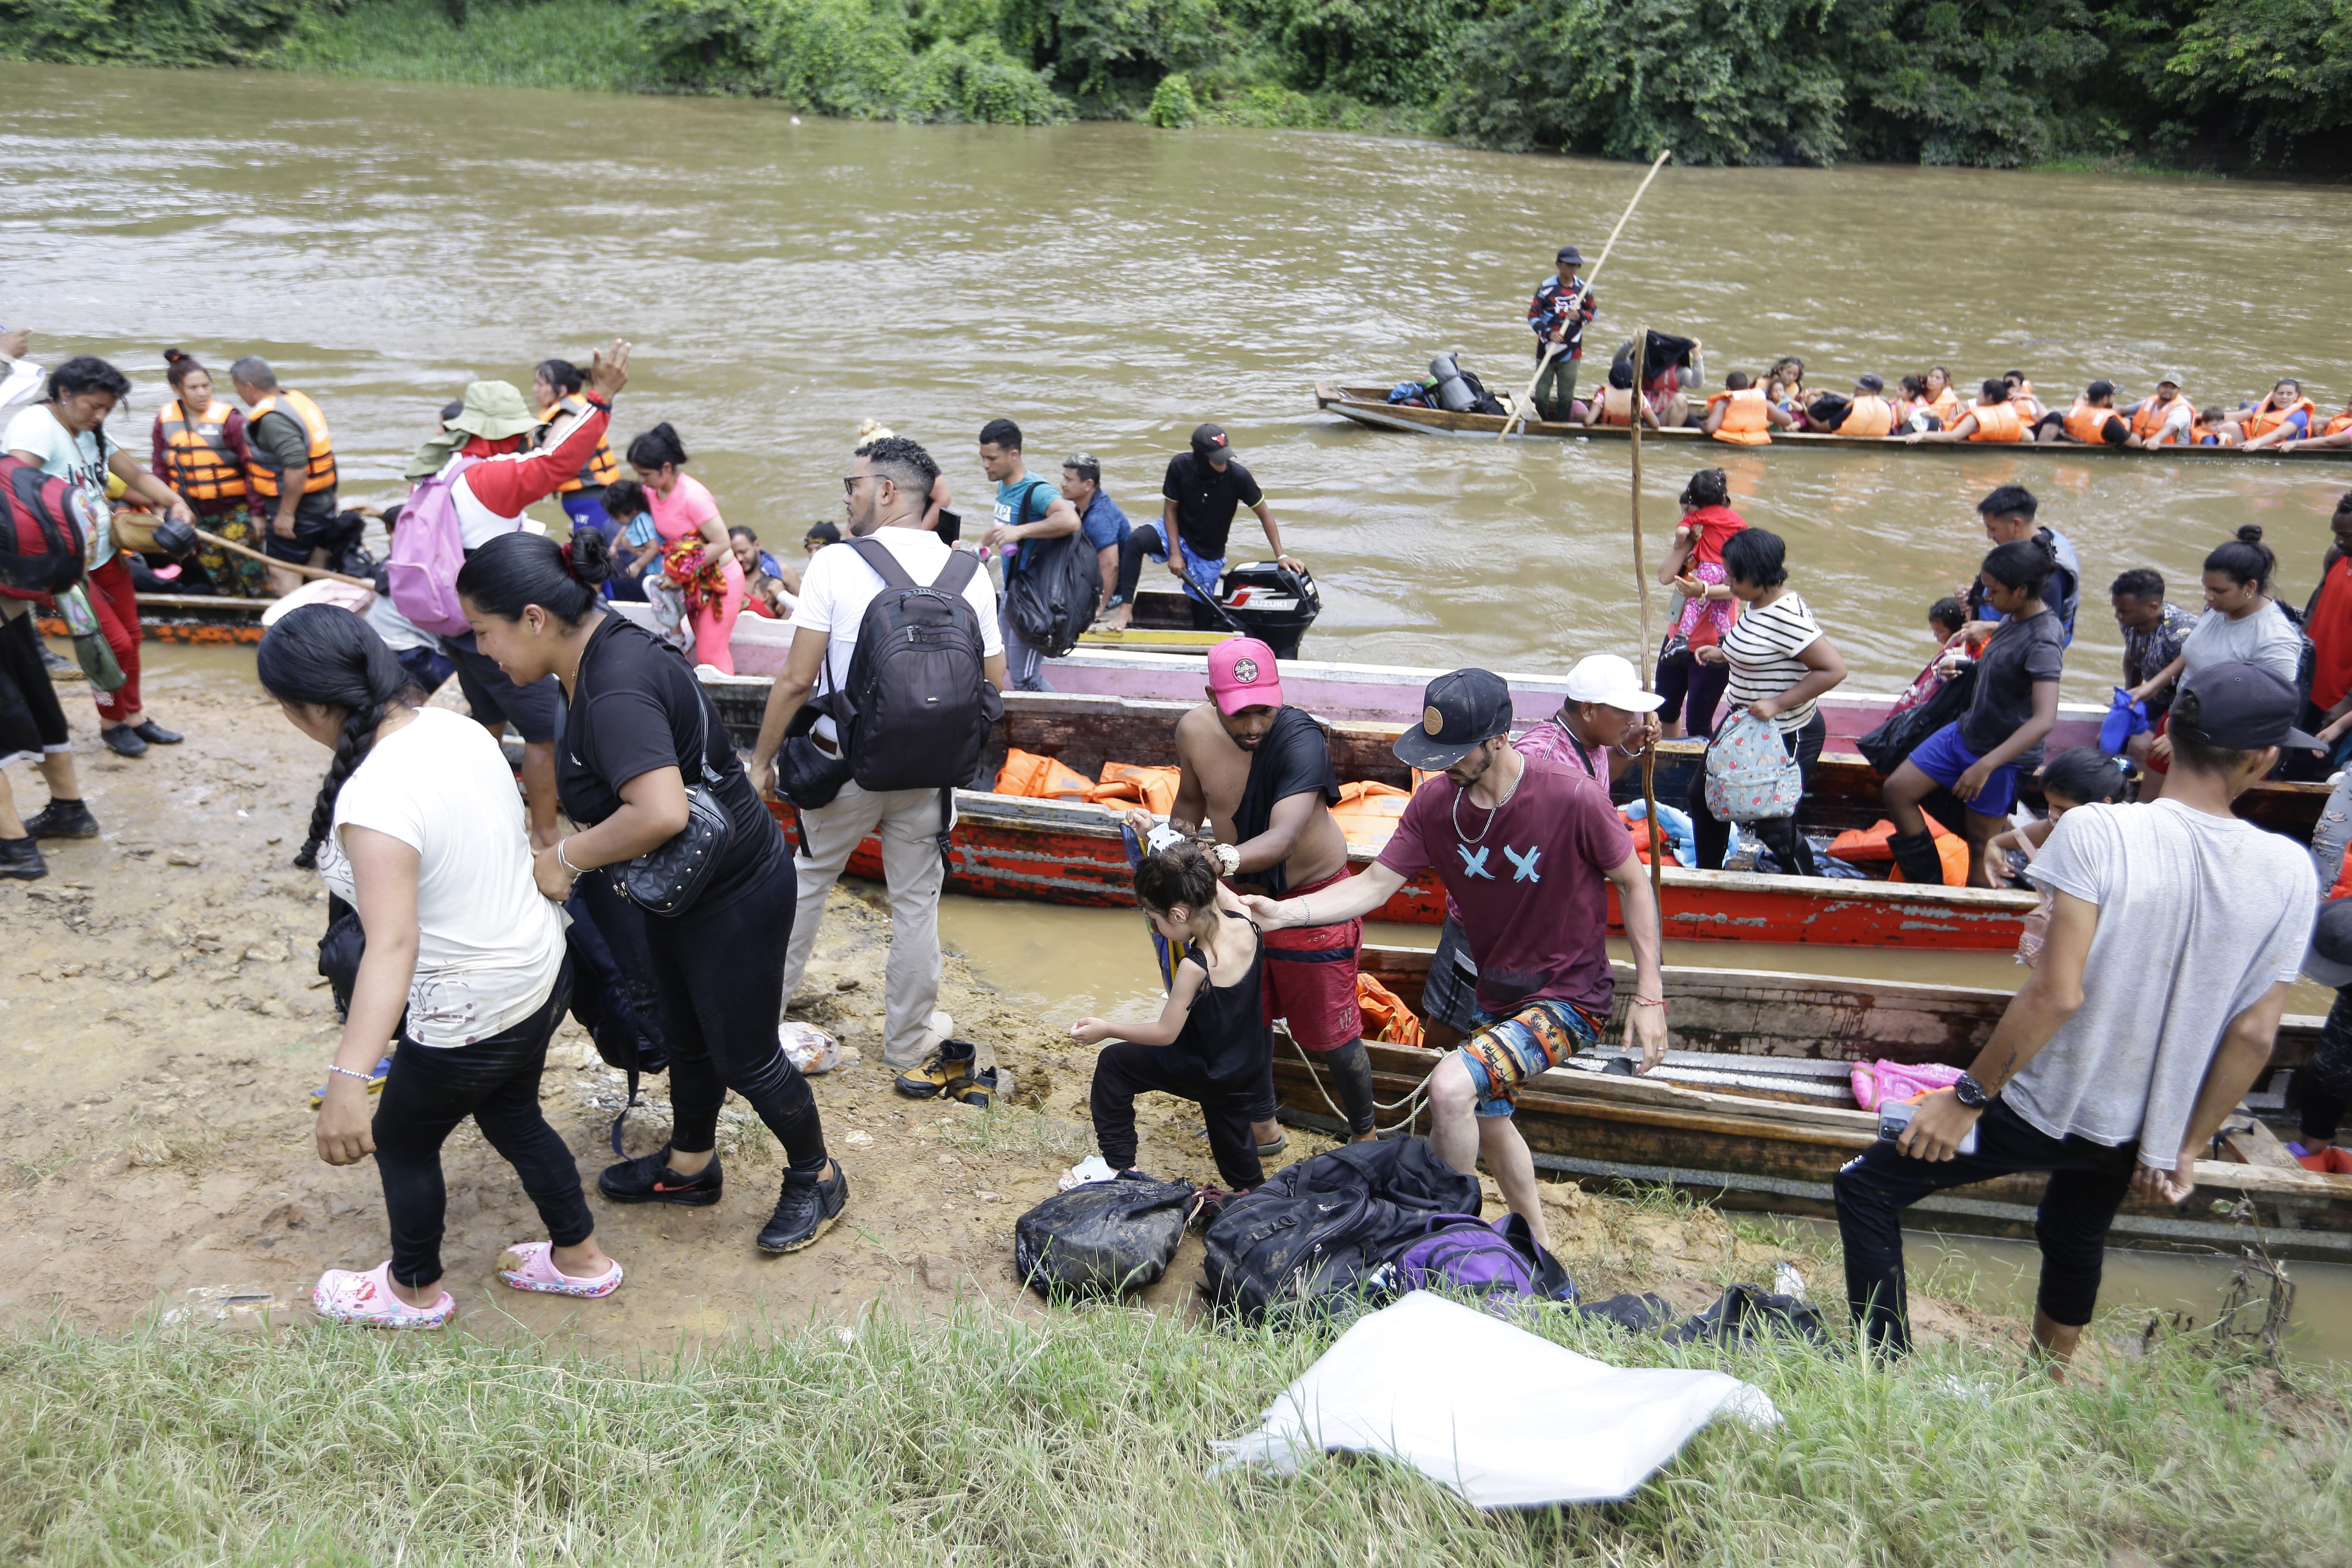 La ola migratoria en Centroamérica sobrepasa capacidades de los entes humanitarios